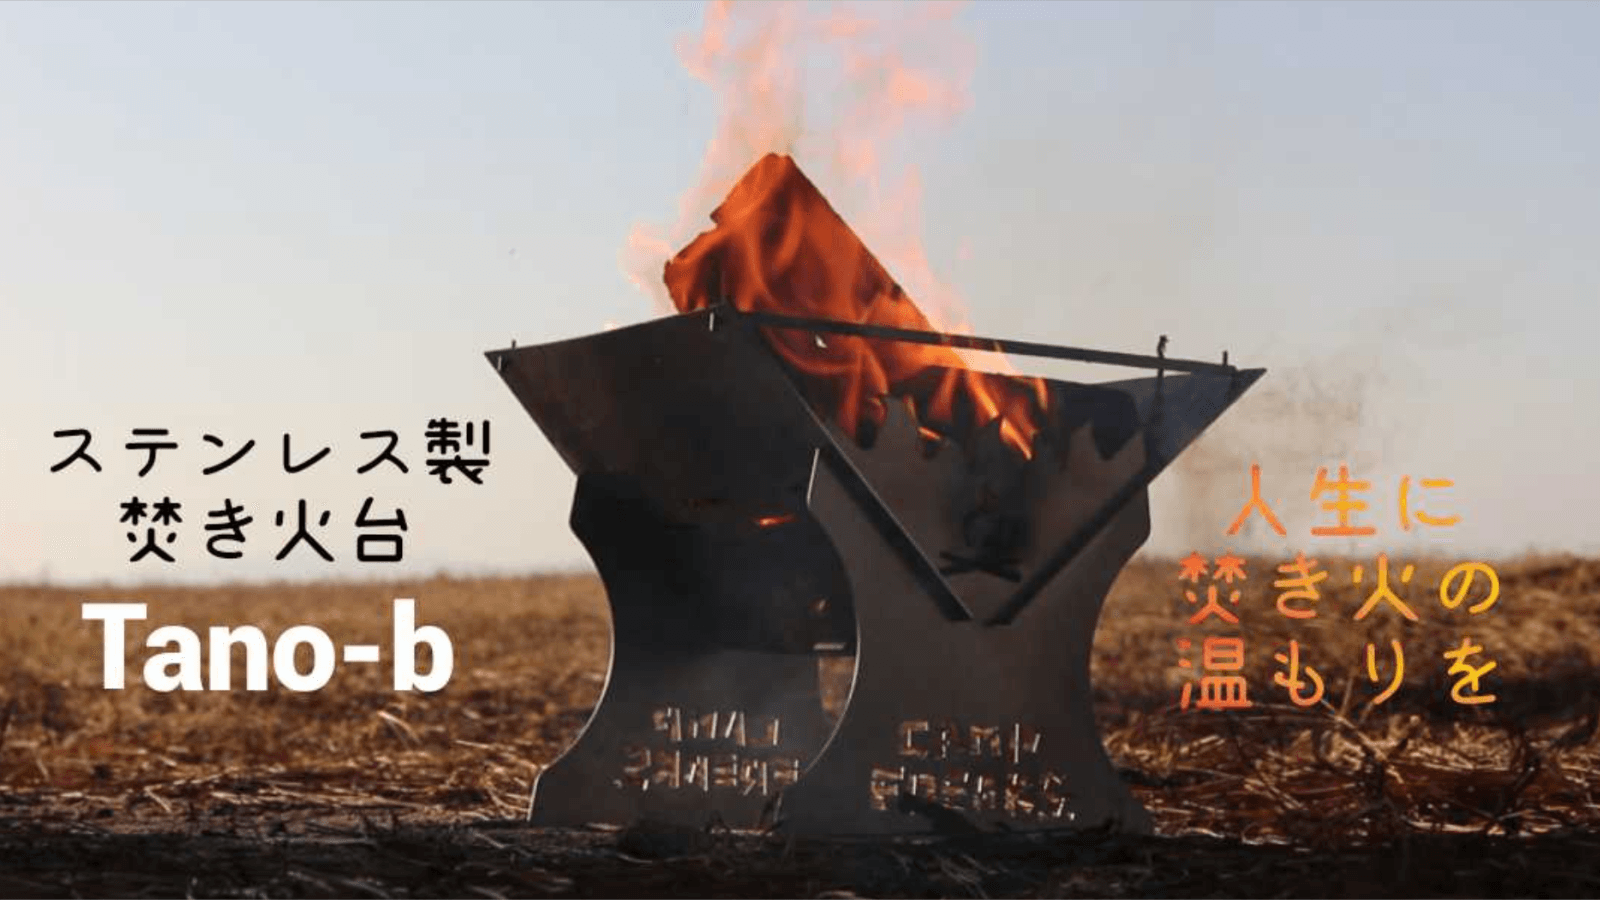 ソロキャンプ用焚き火台「Tano-b」